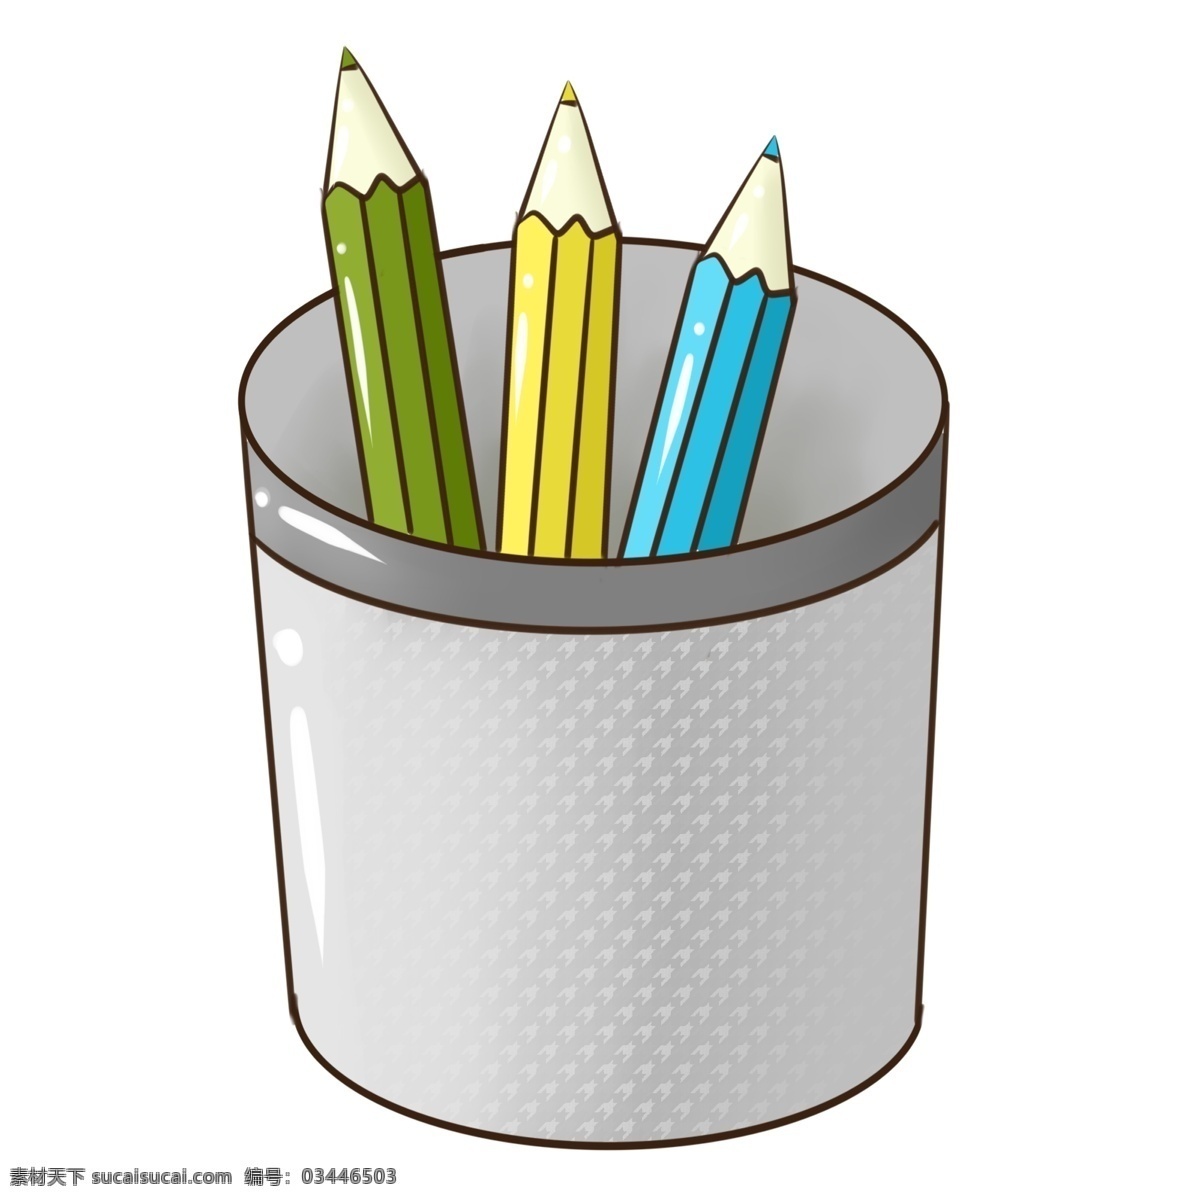 学习 工具 铅笔 插画 黄色的铅笔 绿色的铅笔 卡通插画 学习工具插画 手绘工具插画 蓝色的铅笔